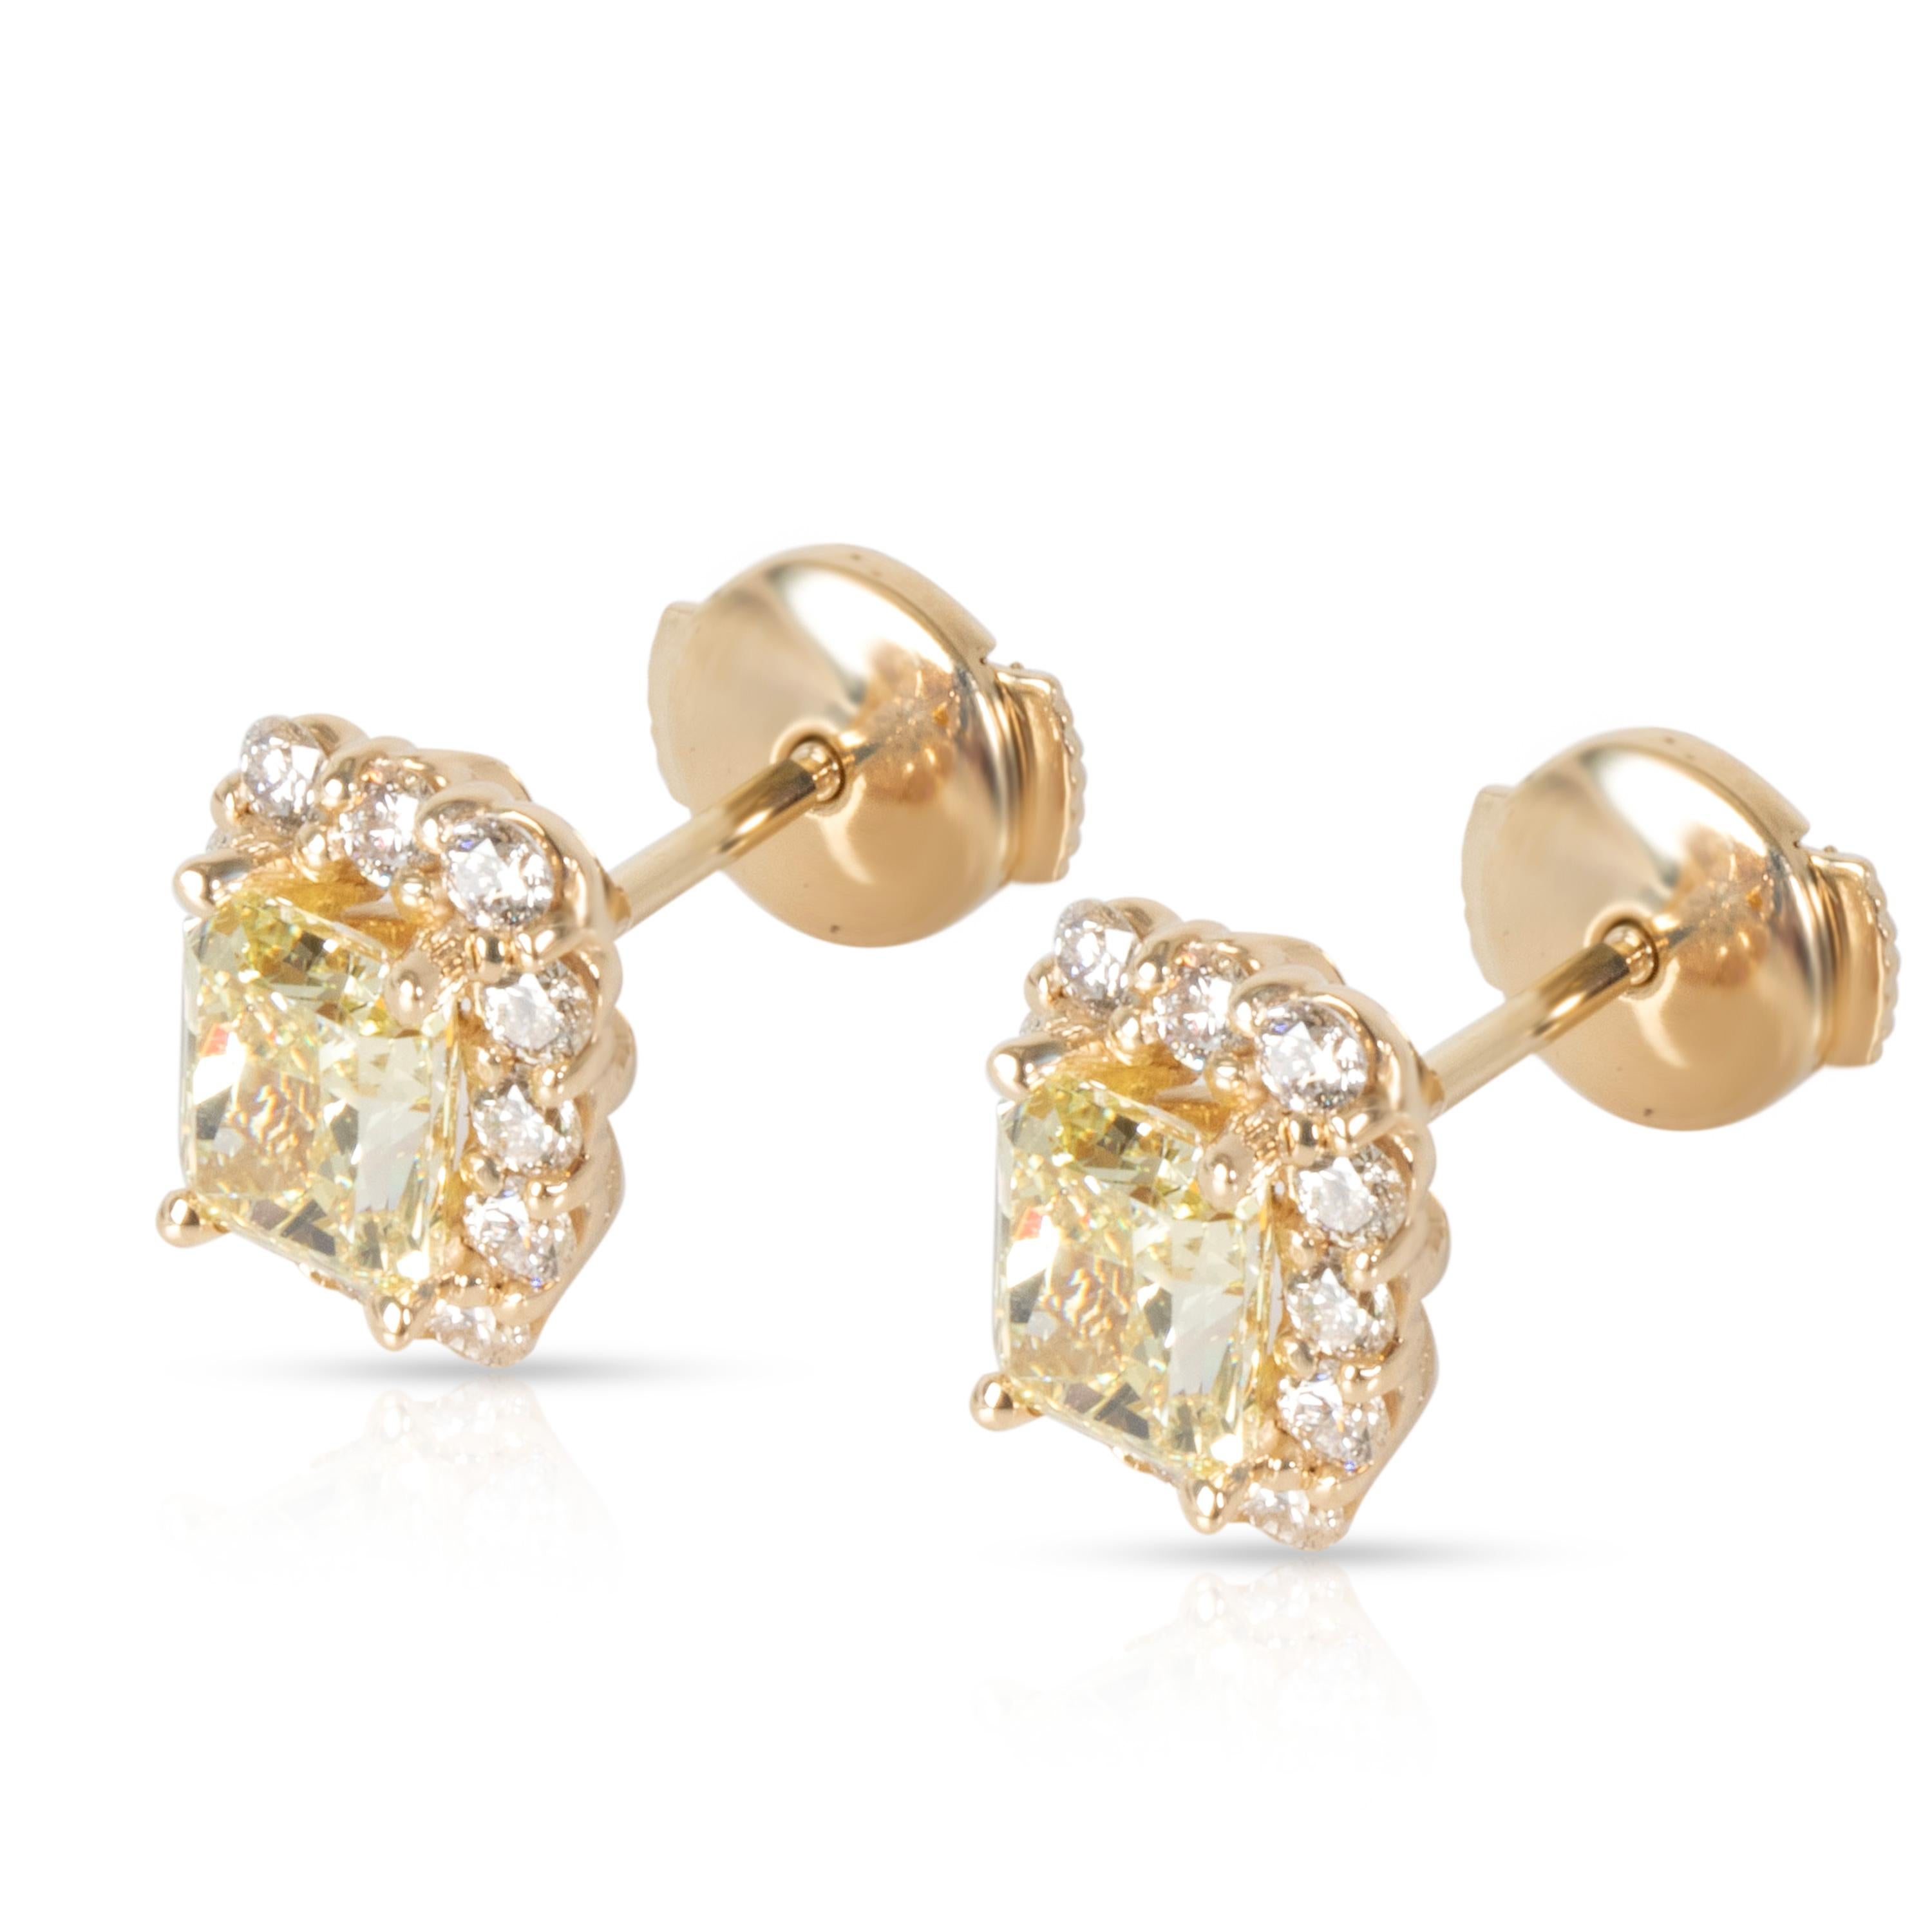 Radiant Cut GIA Fancy Yellow Diamond Stud Earrings in 14 Karat Gold '1.85 Carat FY/VS1-VS2'